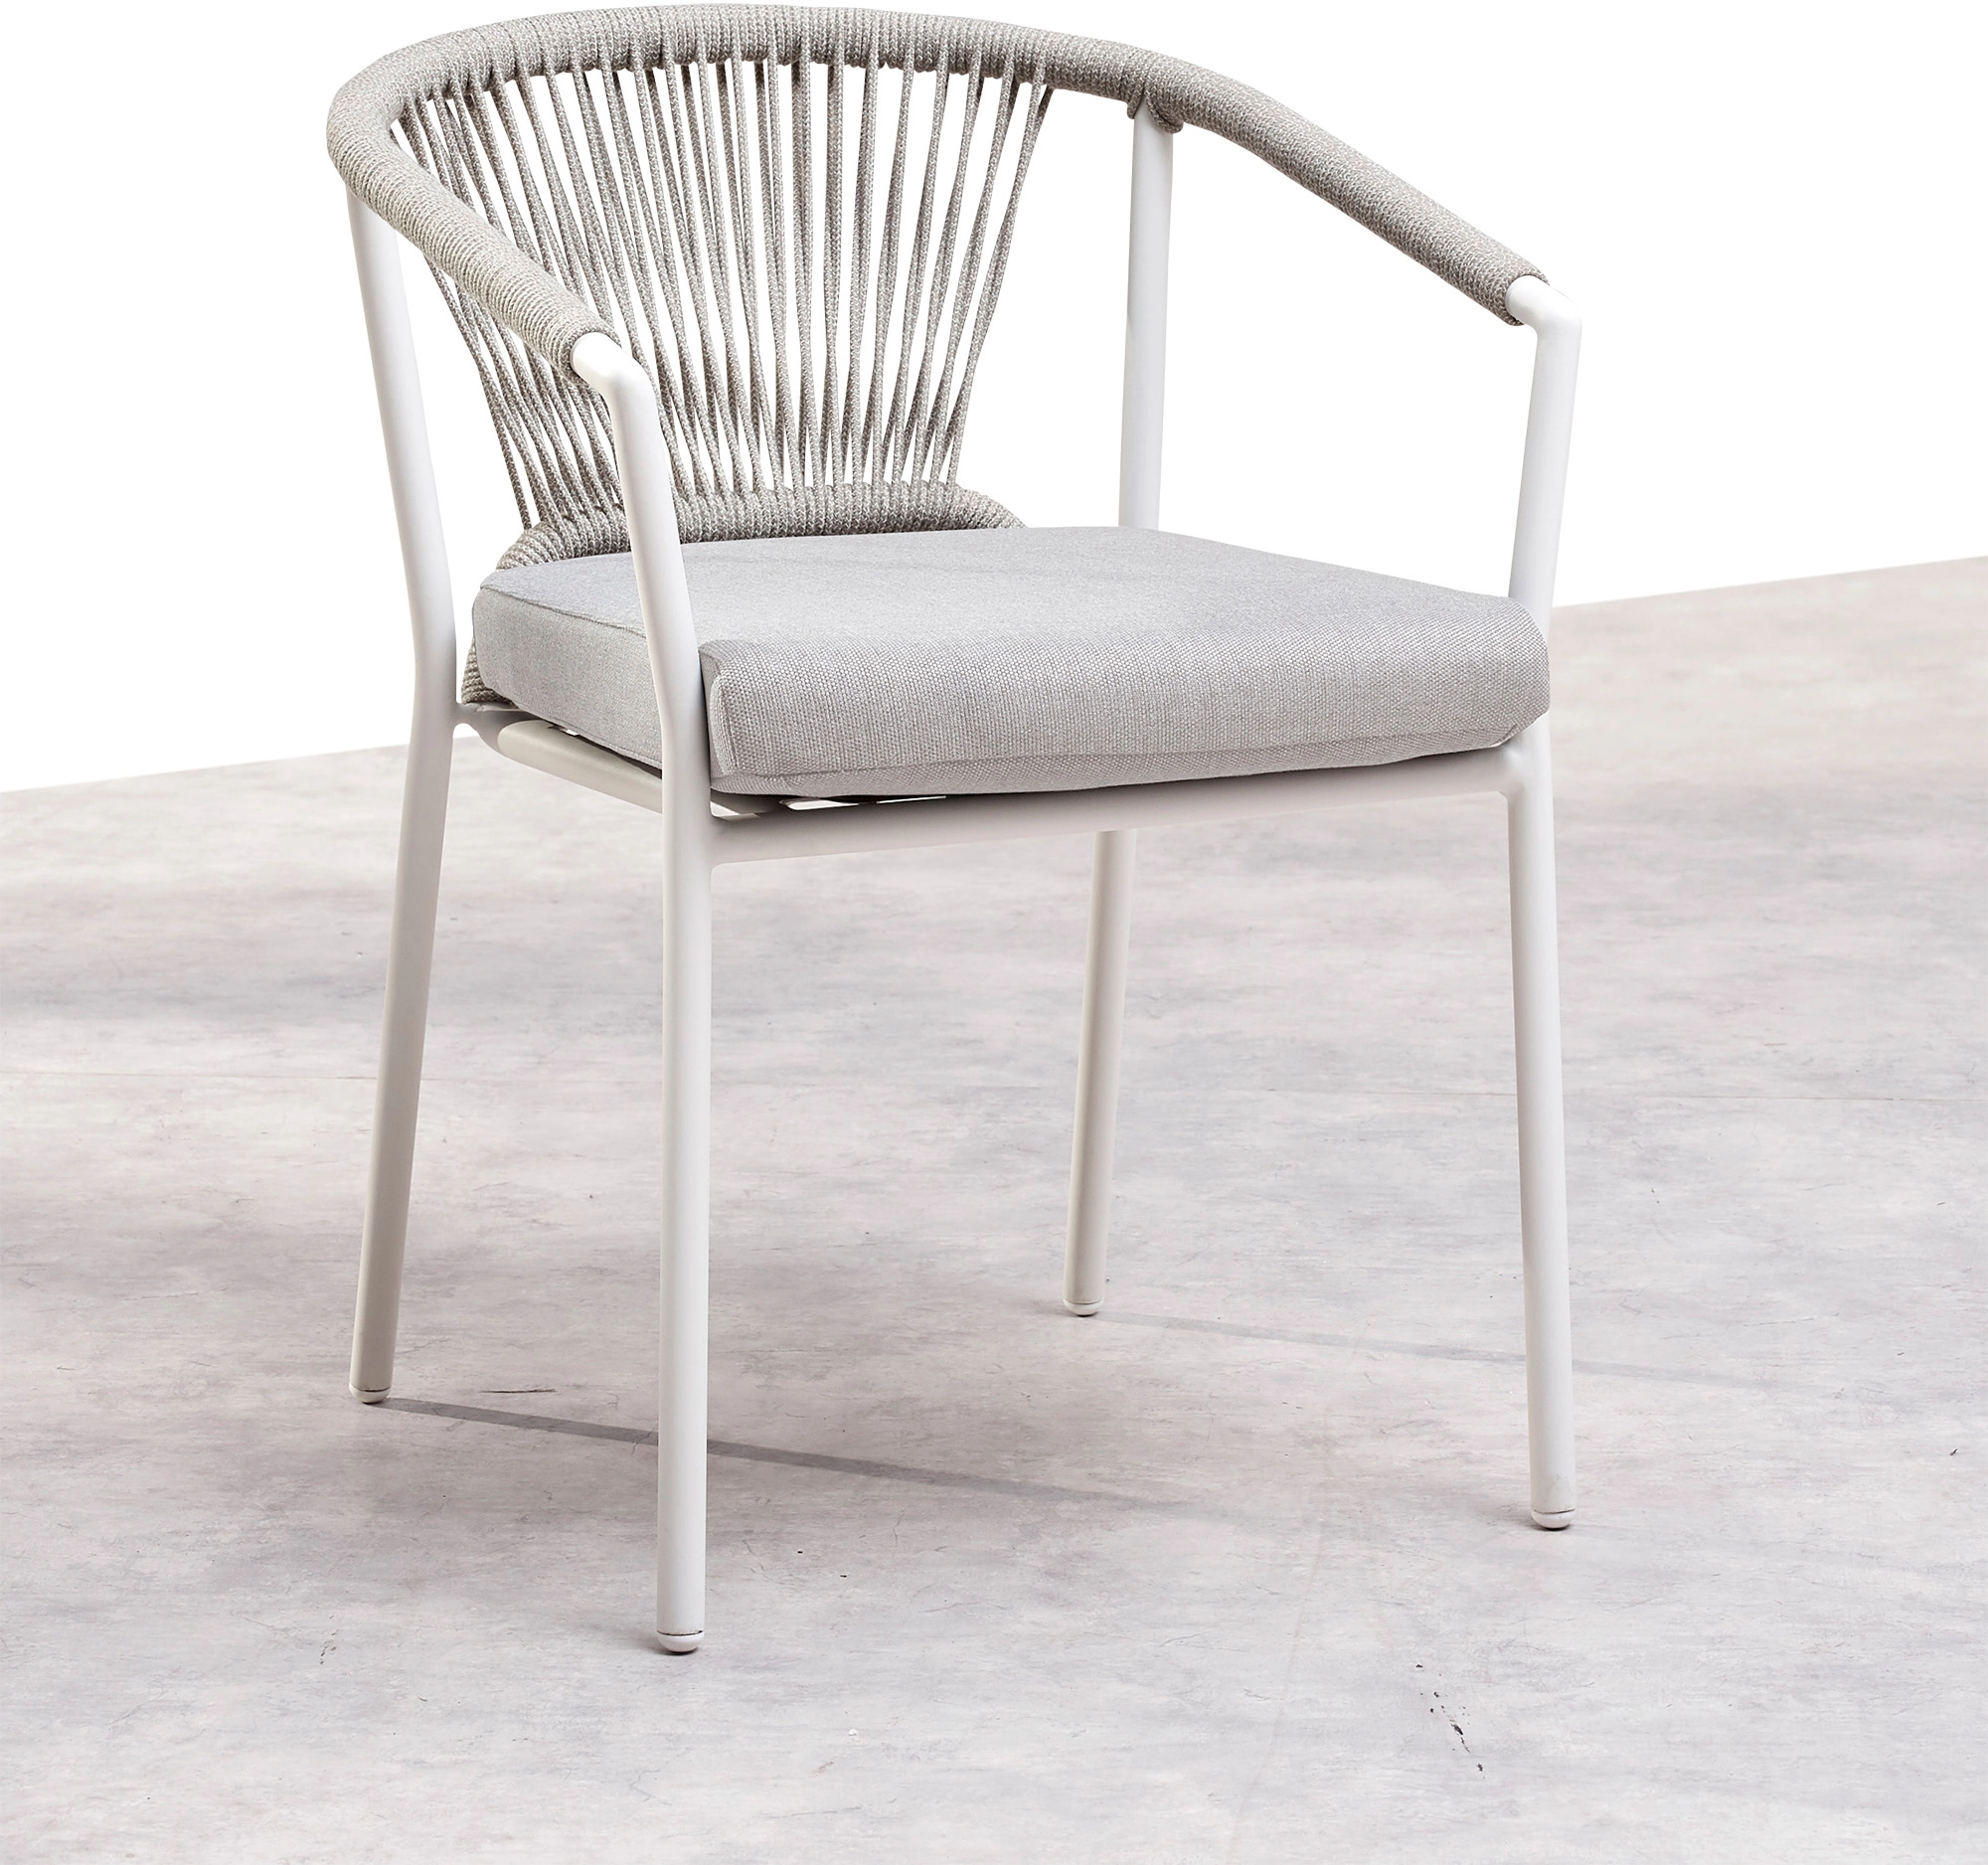 Best Dining-Sessel Matera 59 cm x 61 cm x 79 cm Weiß/Sand kaufen bei OBI